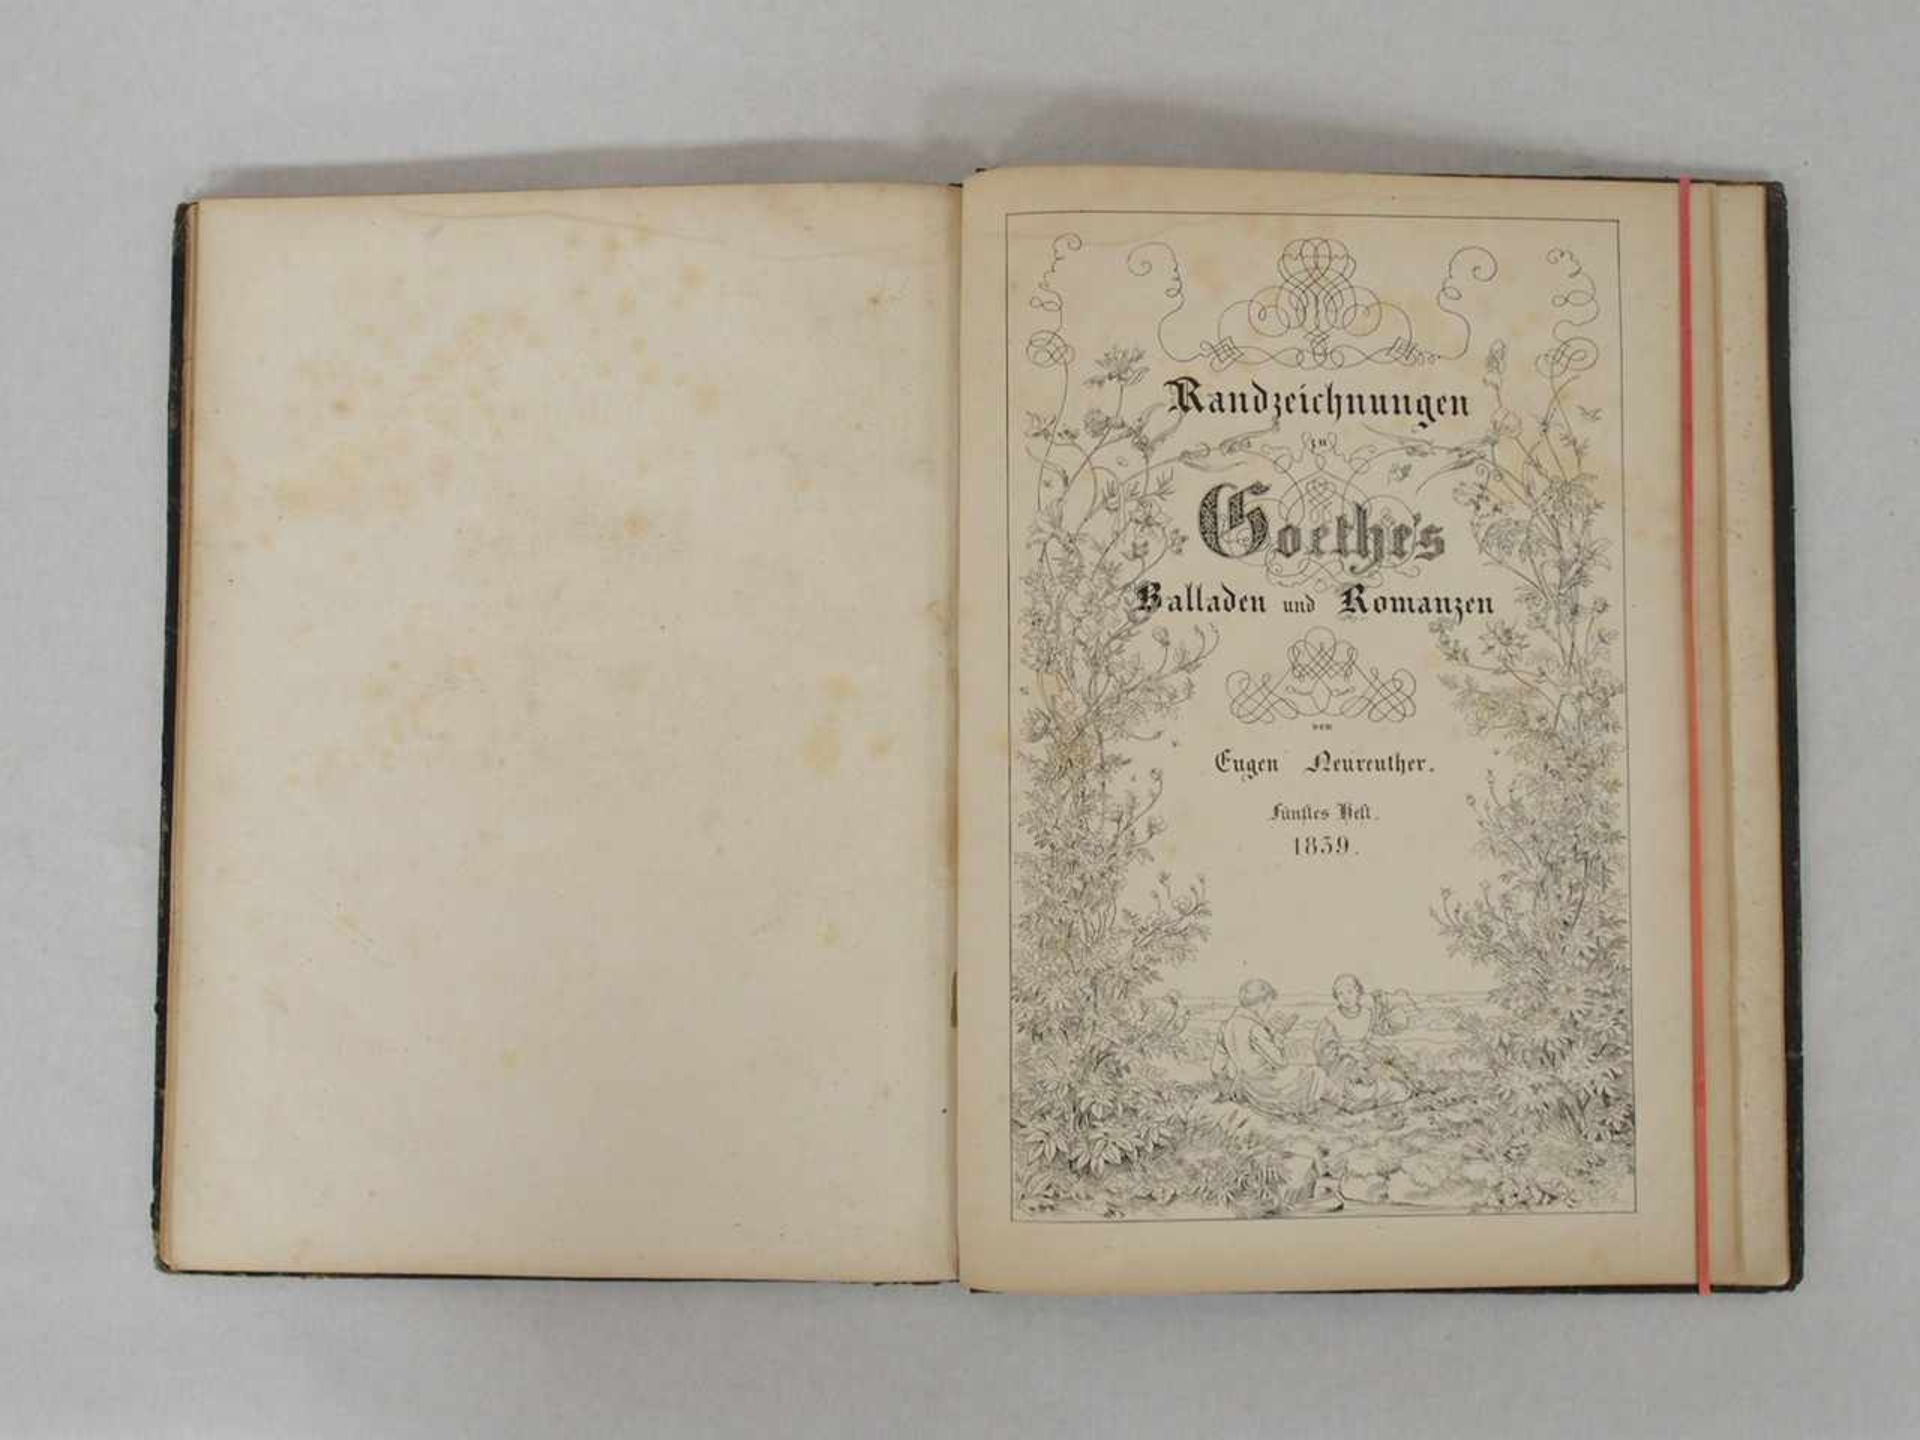 NEUREUTHER, EugenRandzeichnungen zu Goethes Balladen und Romanzen5 Hefte in einem Band, - Bild 3 aus 3